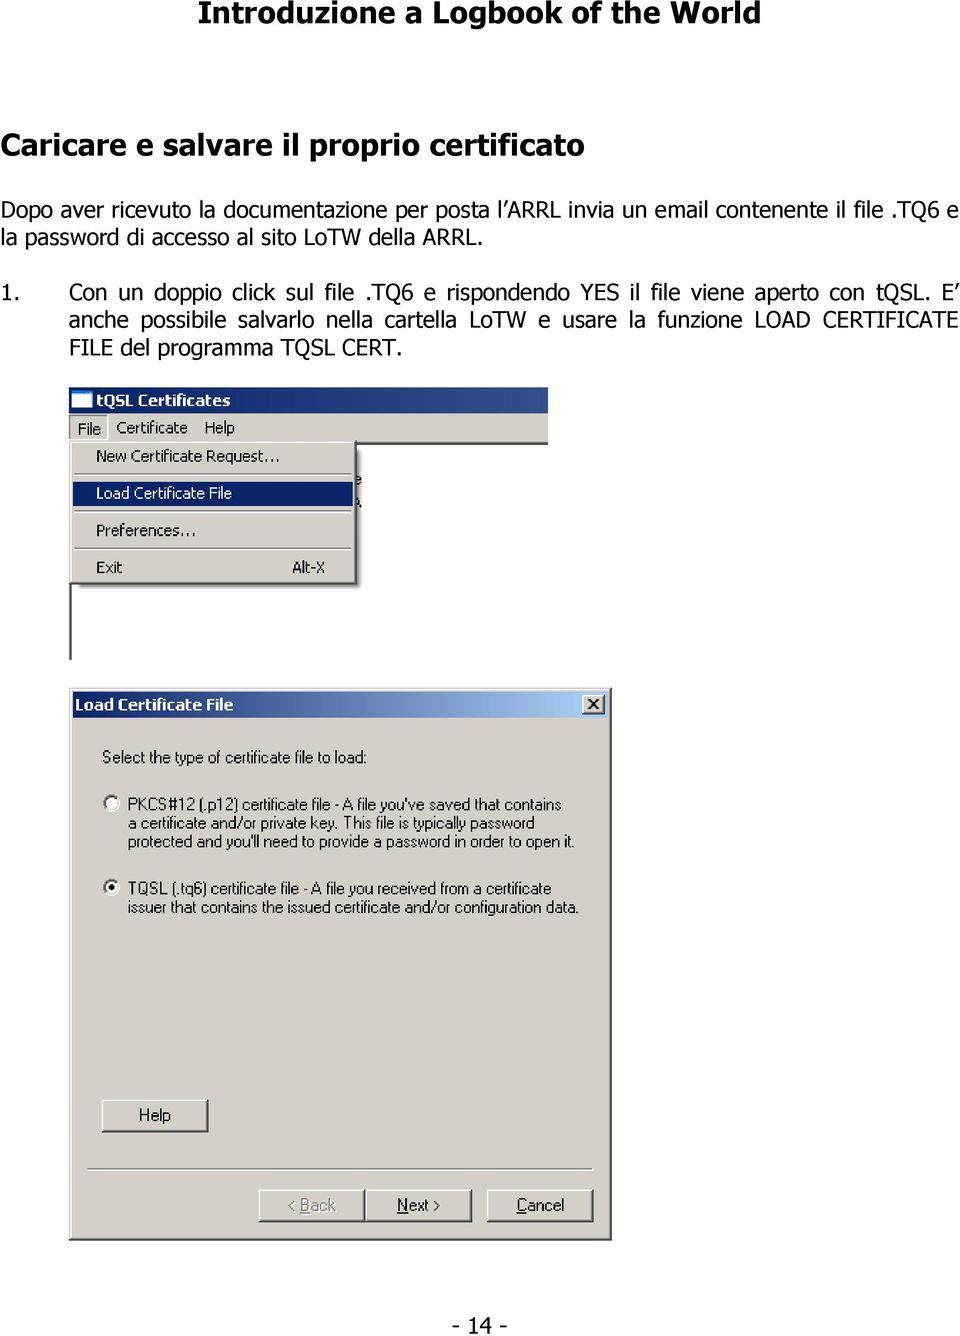 Con un doppio click sul file.tq6 e rispondendo YES il file viene aperto con tqsl.